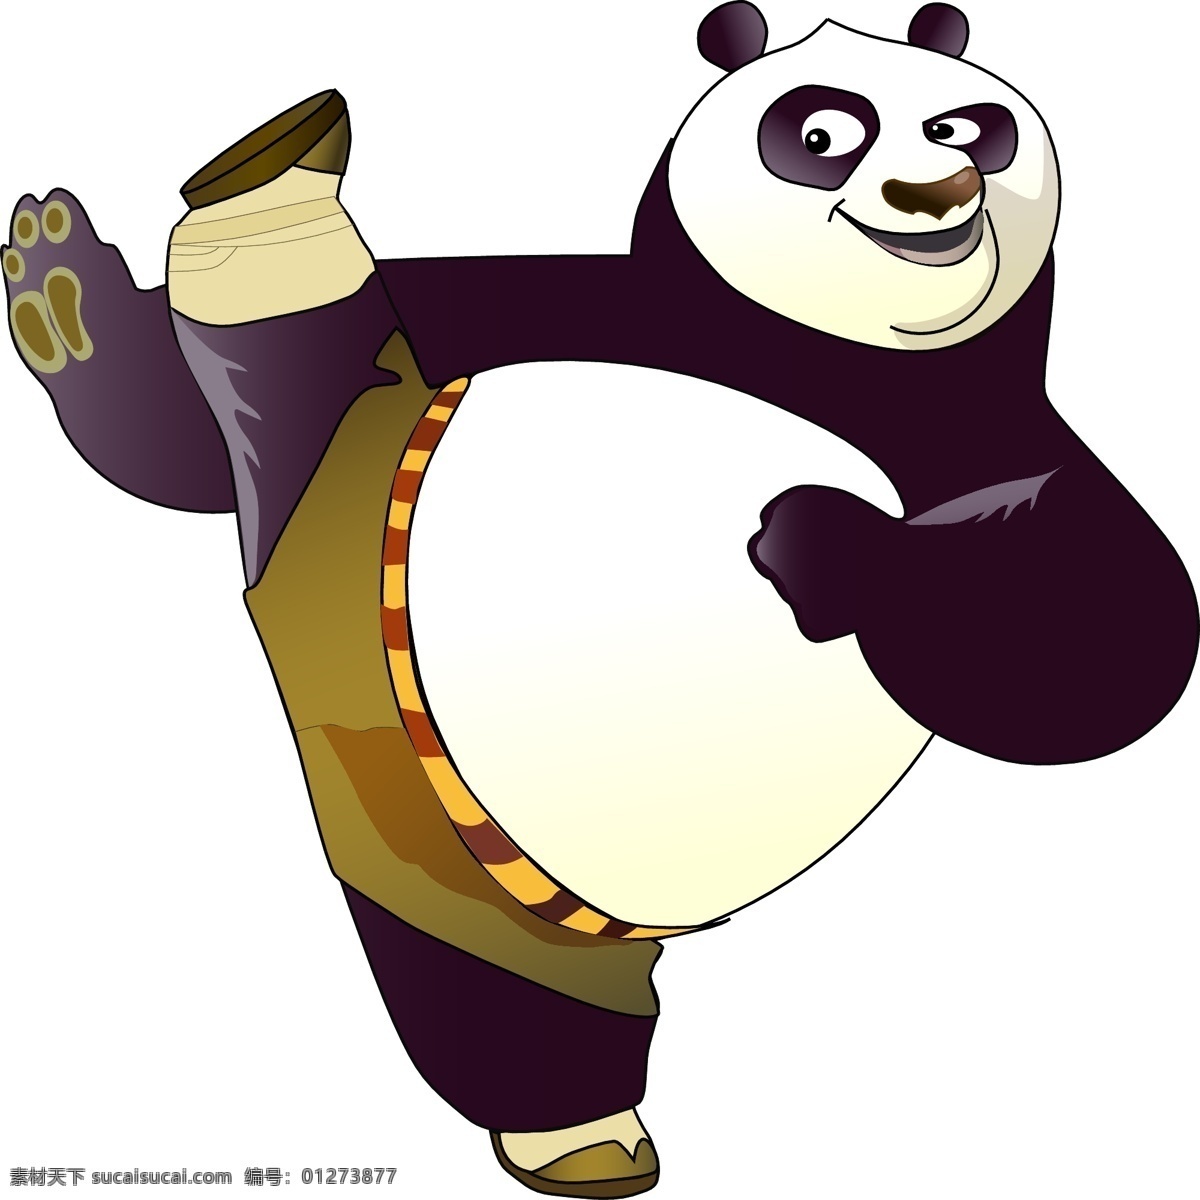 功夫熊猫 功夫 熊猫 生物世界 野生动物 矢量图库